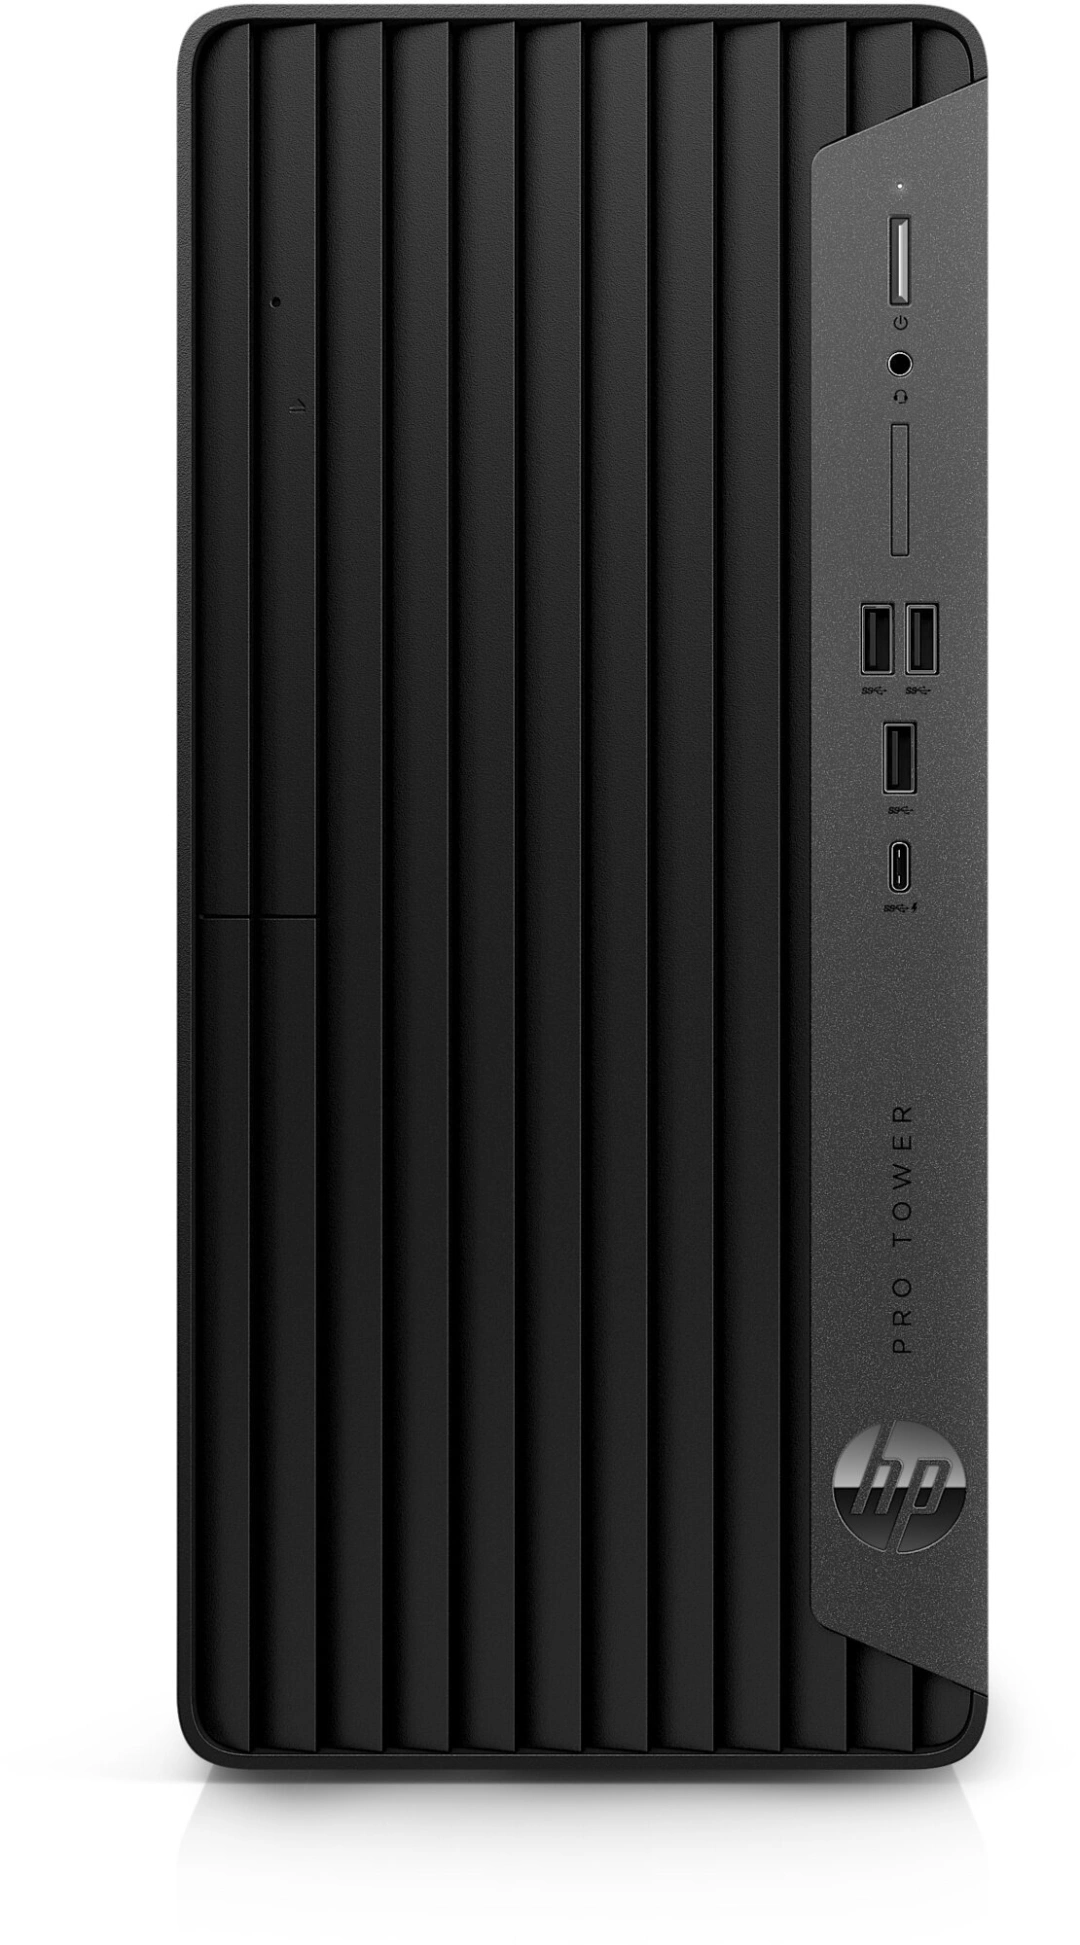 HP Pro Tower 400 G9, černá (99P05ET)